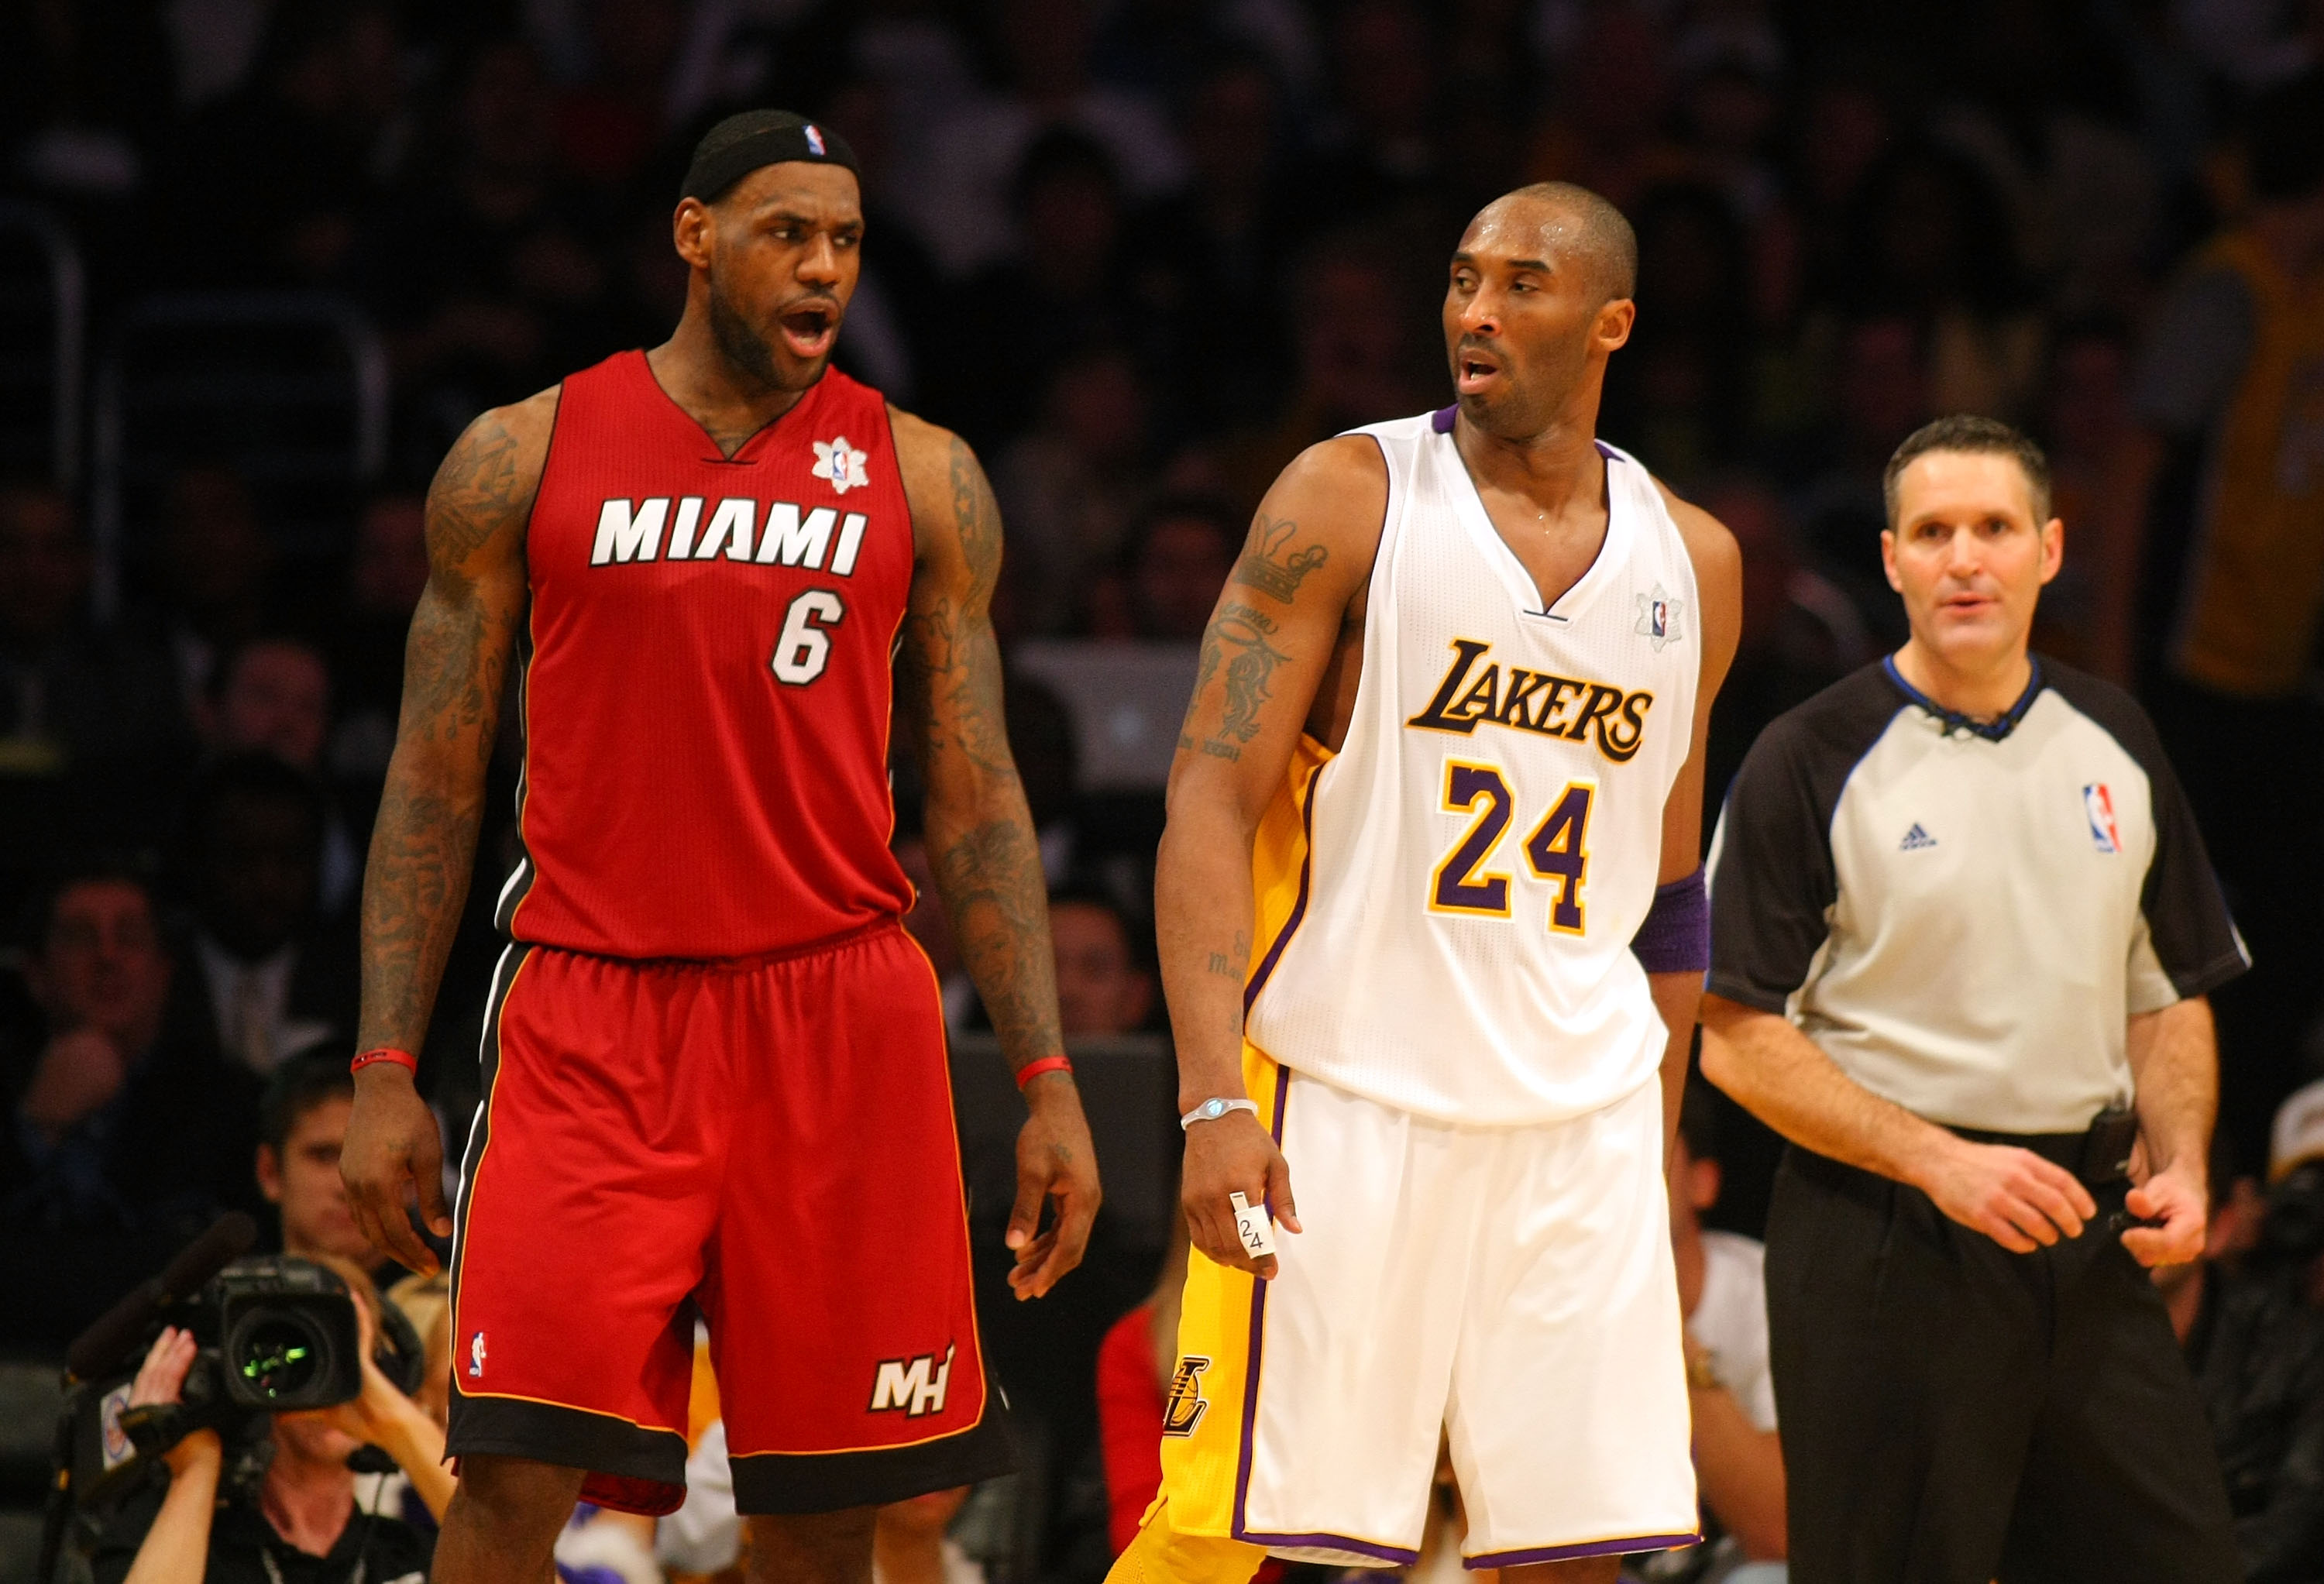 LA Lakers beat Dallas Mavericks minus Kobe Bryant again, NBA